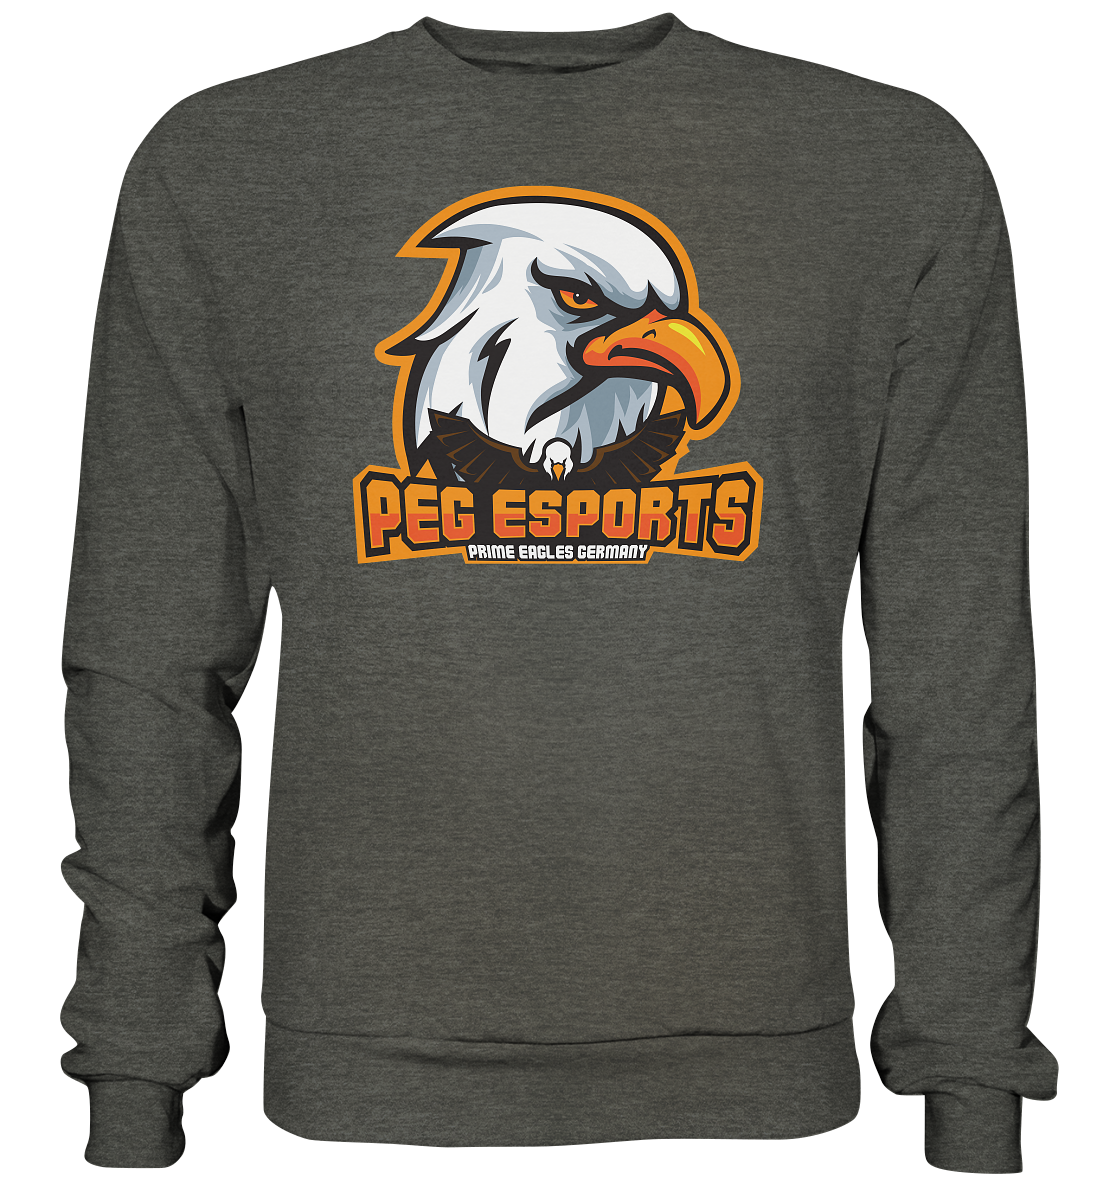 PEG ESPORTS - Basic Sweatshirt